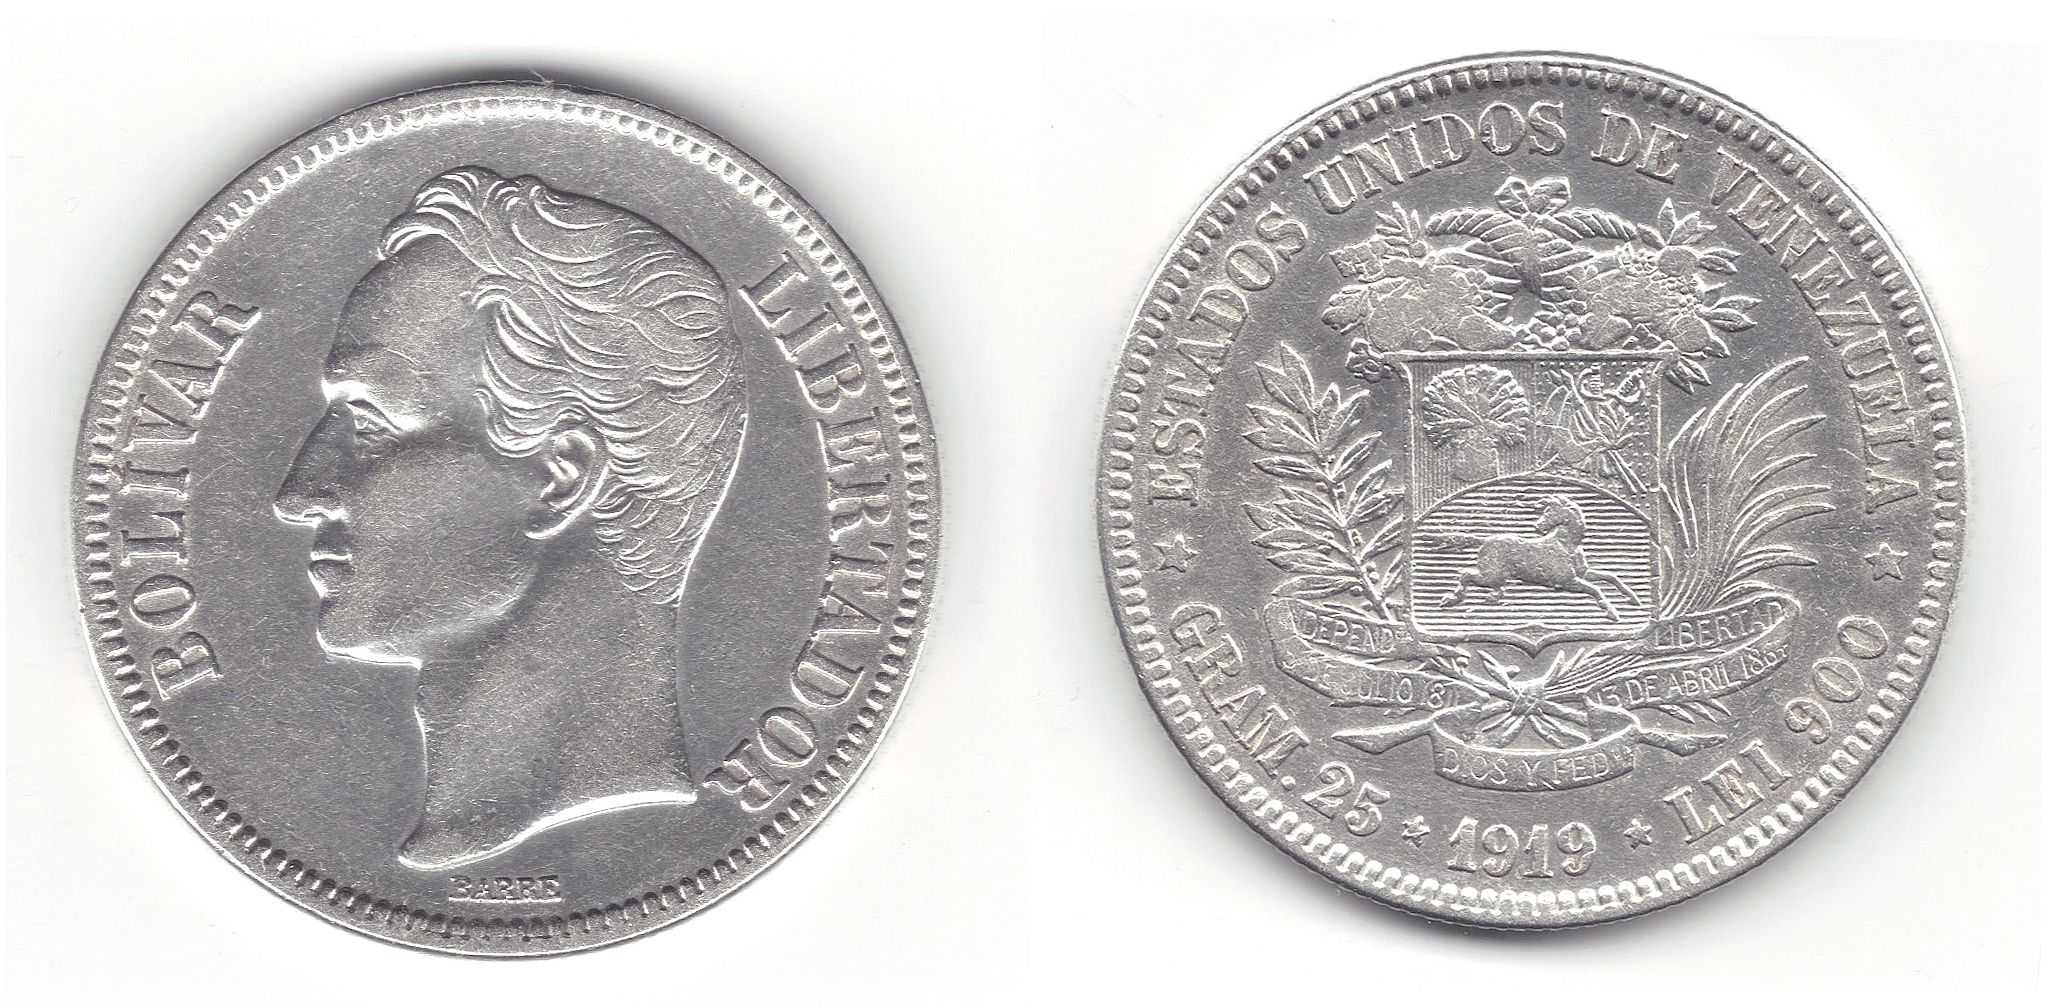 Moneda Venezolana de 5 Bolivares de 1919